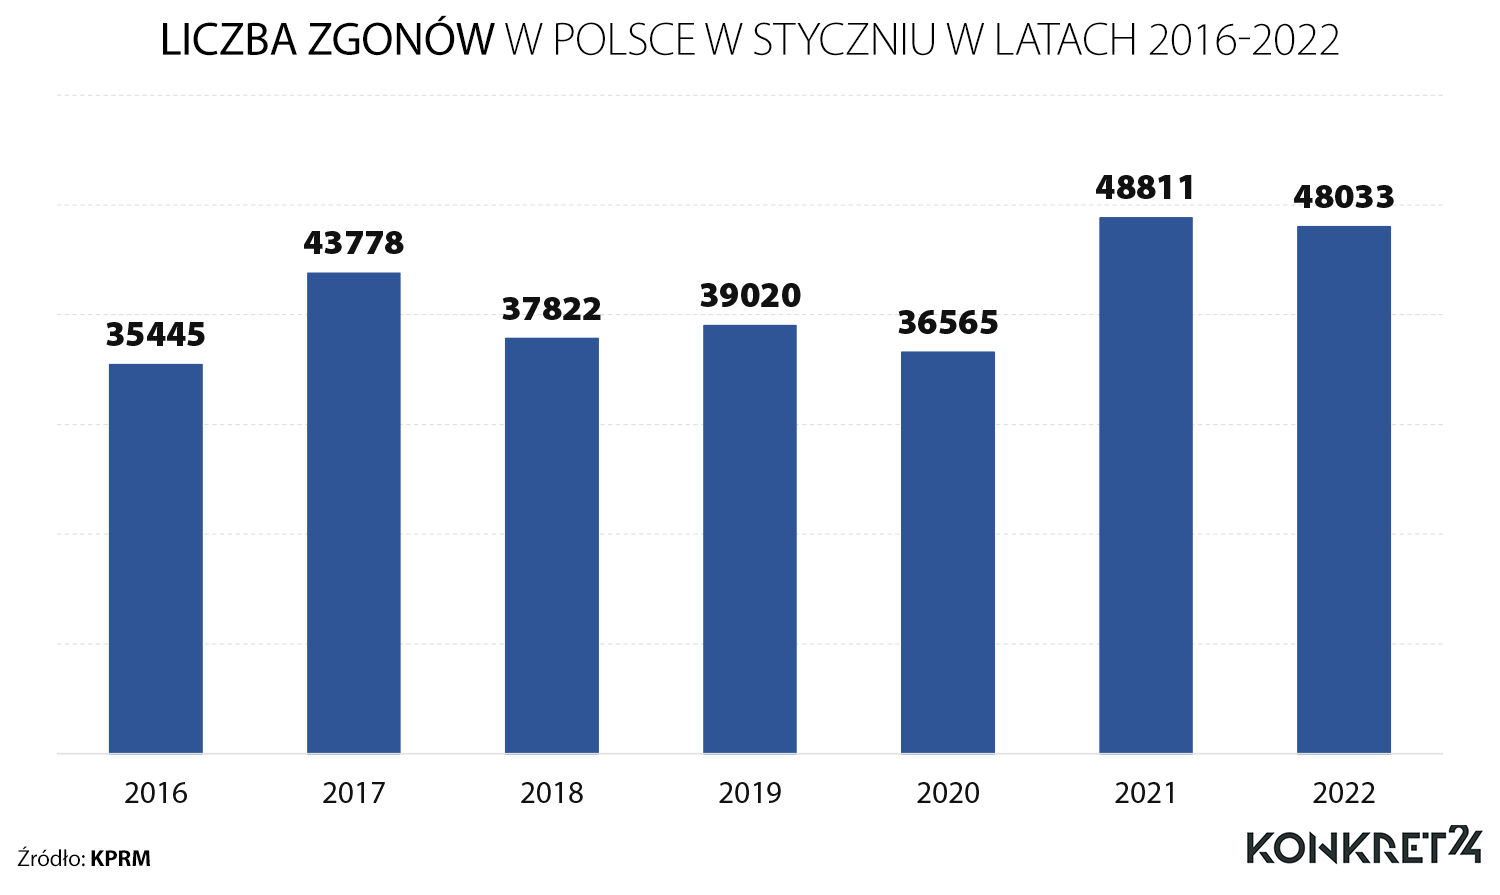 Liczba zgonów w Polsce w styczniu w latach 2016-2022